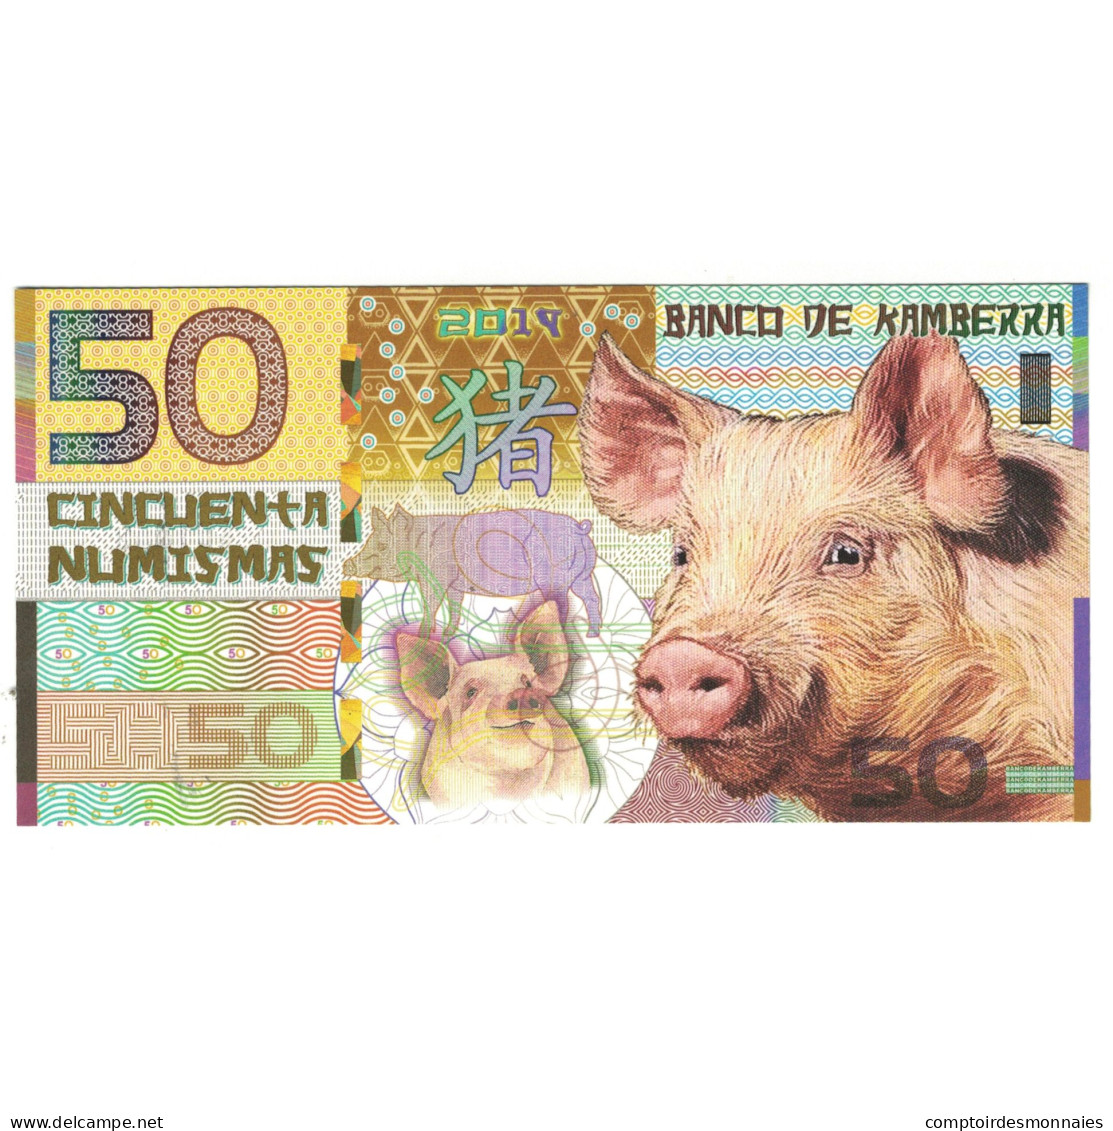 Billet, Australie, Billet Touristique, 2019, 50 Dollars ,Colorful Plastic - Fictifs & Specimens